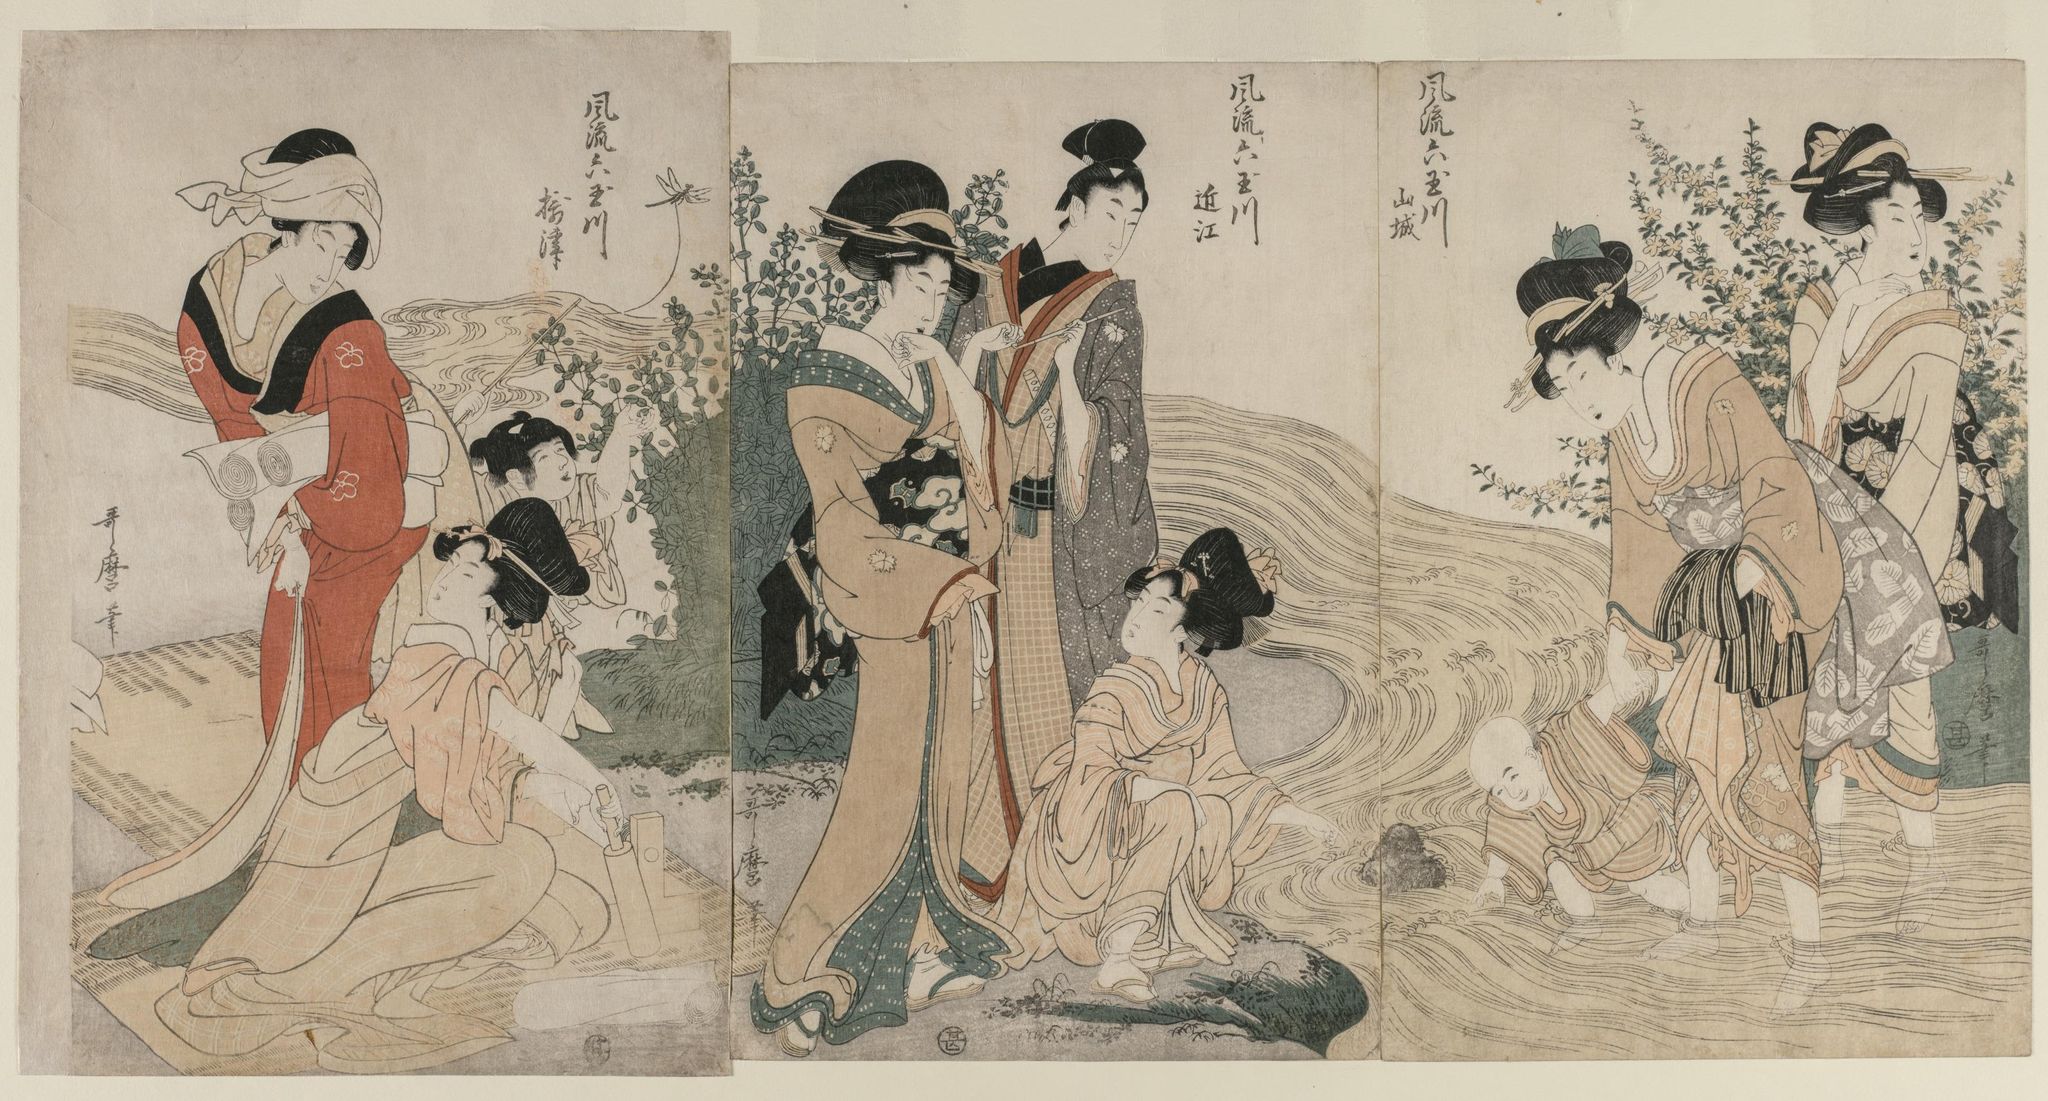 Musashi, Omi, Yamashiro, and Settsu Provinces from the series Fashionable Six Jewel Rivers (Furyu Mu Tamagawa)